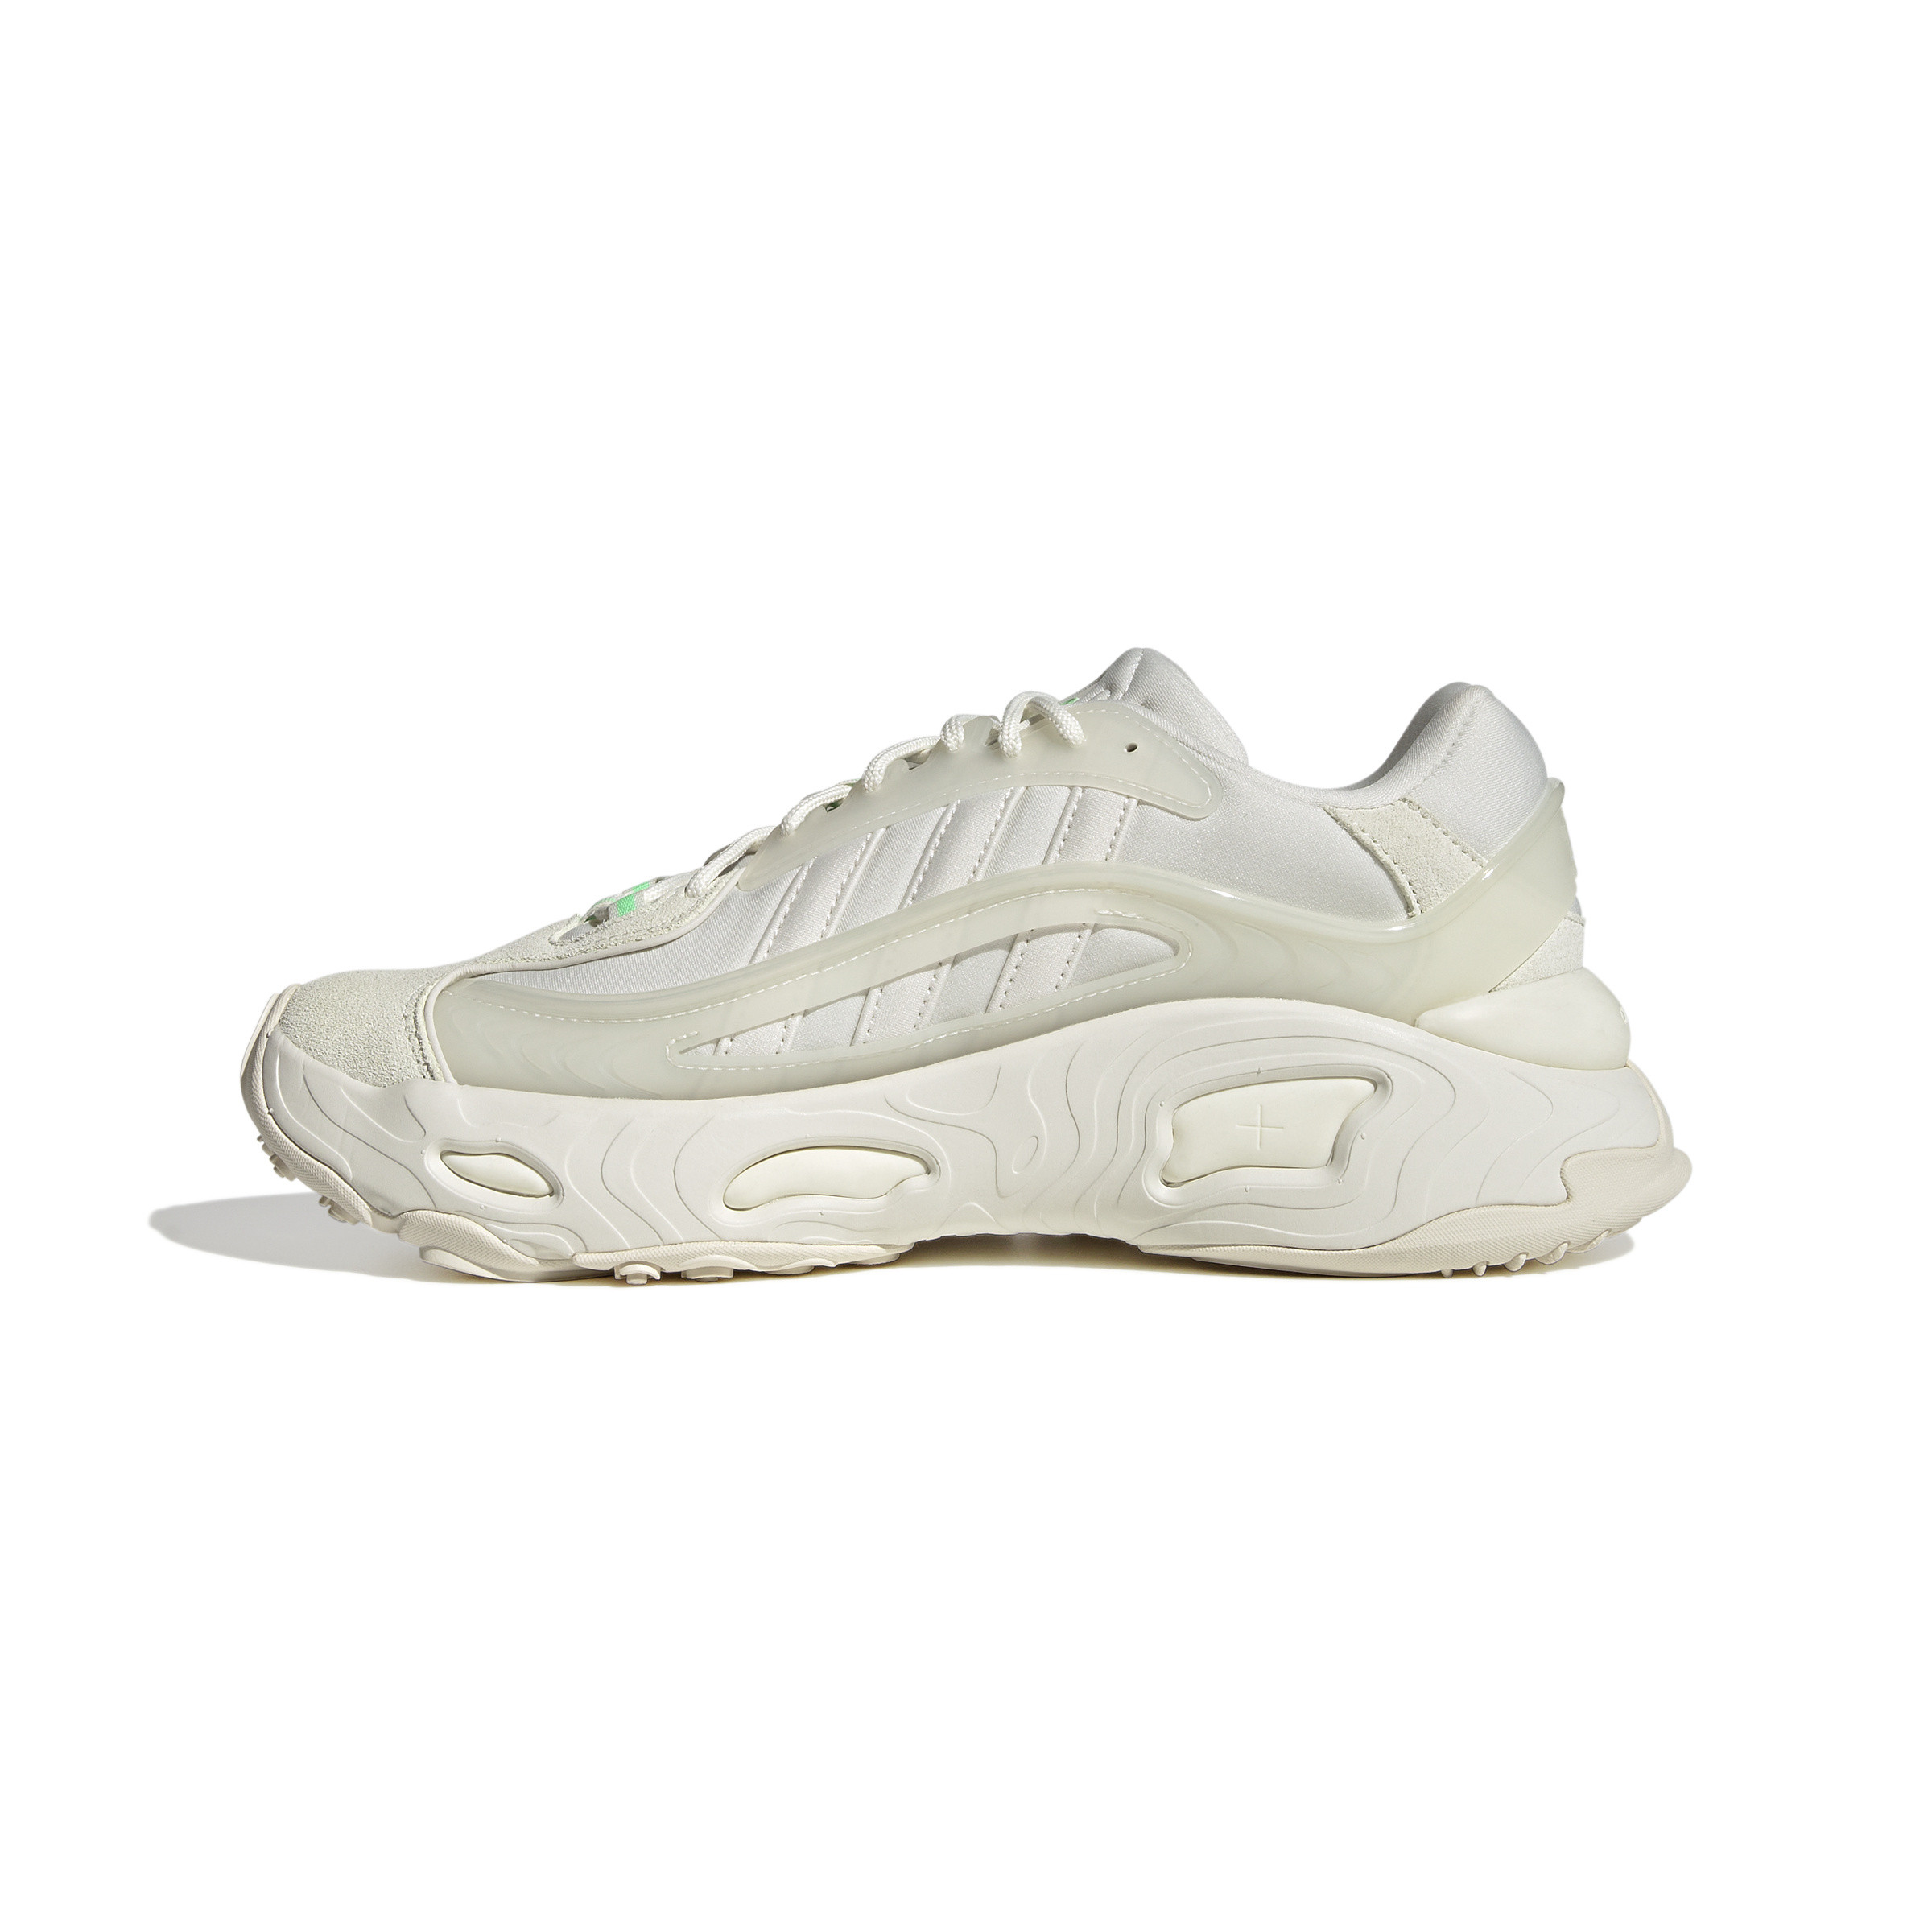 Adidas - Oznova Shoes, White, large image number 3